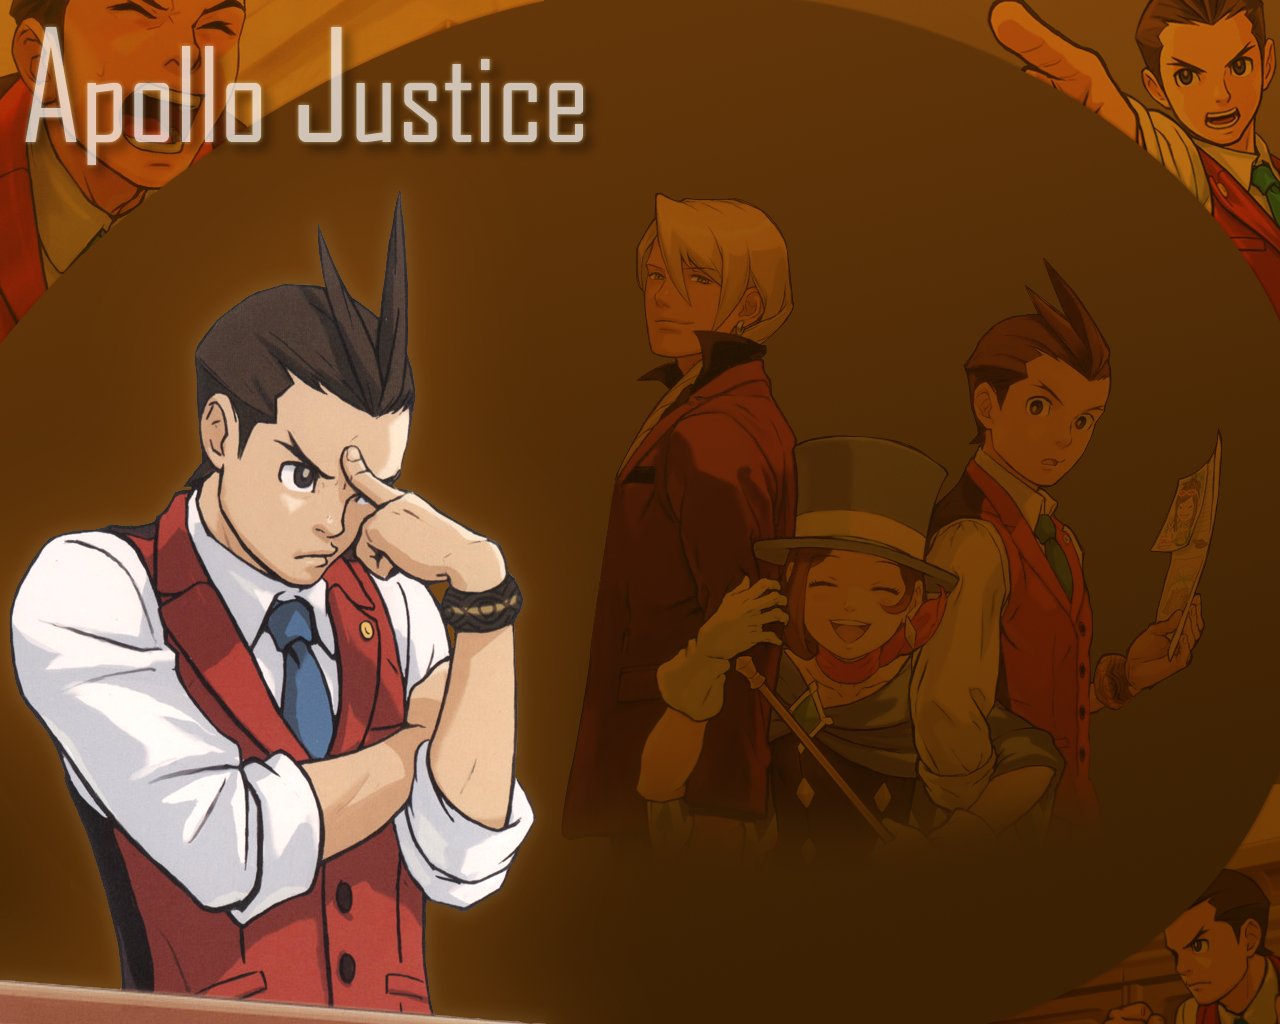 Apollo Justice Wallpaper